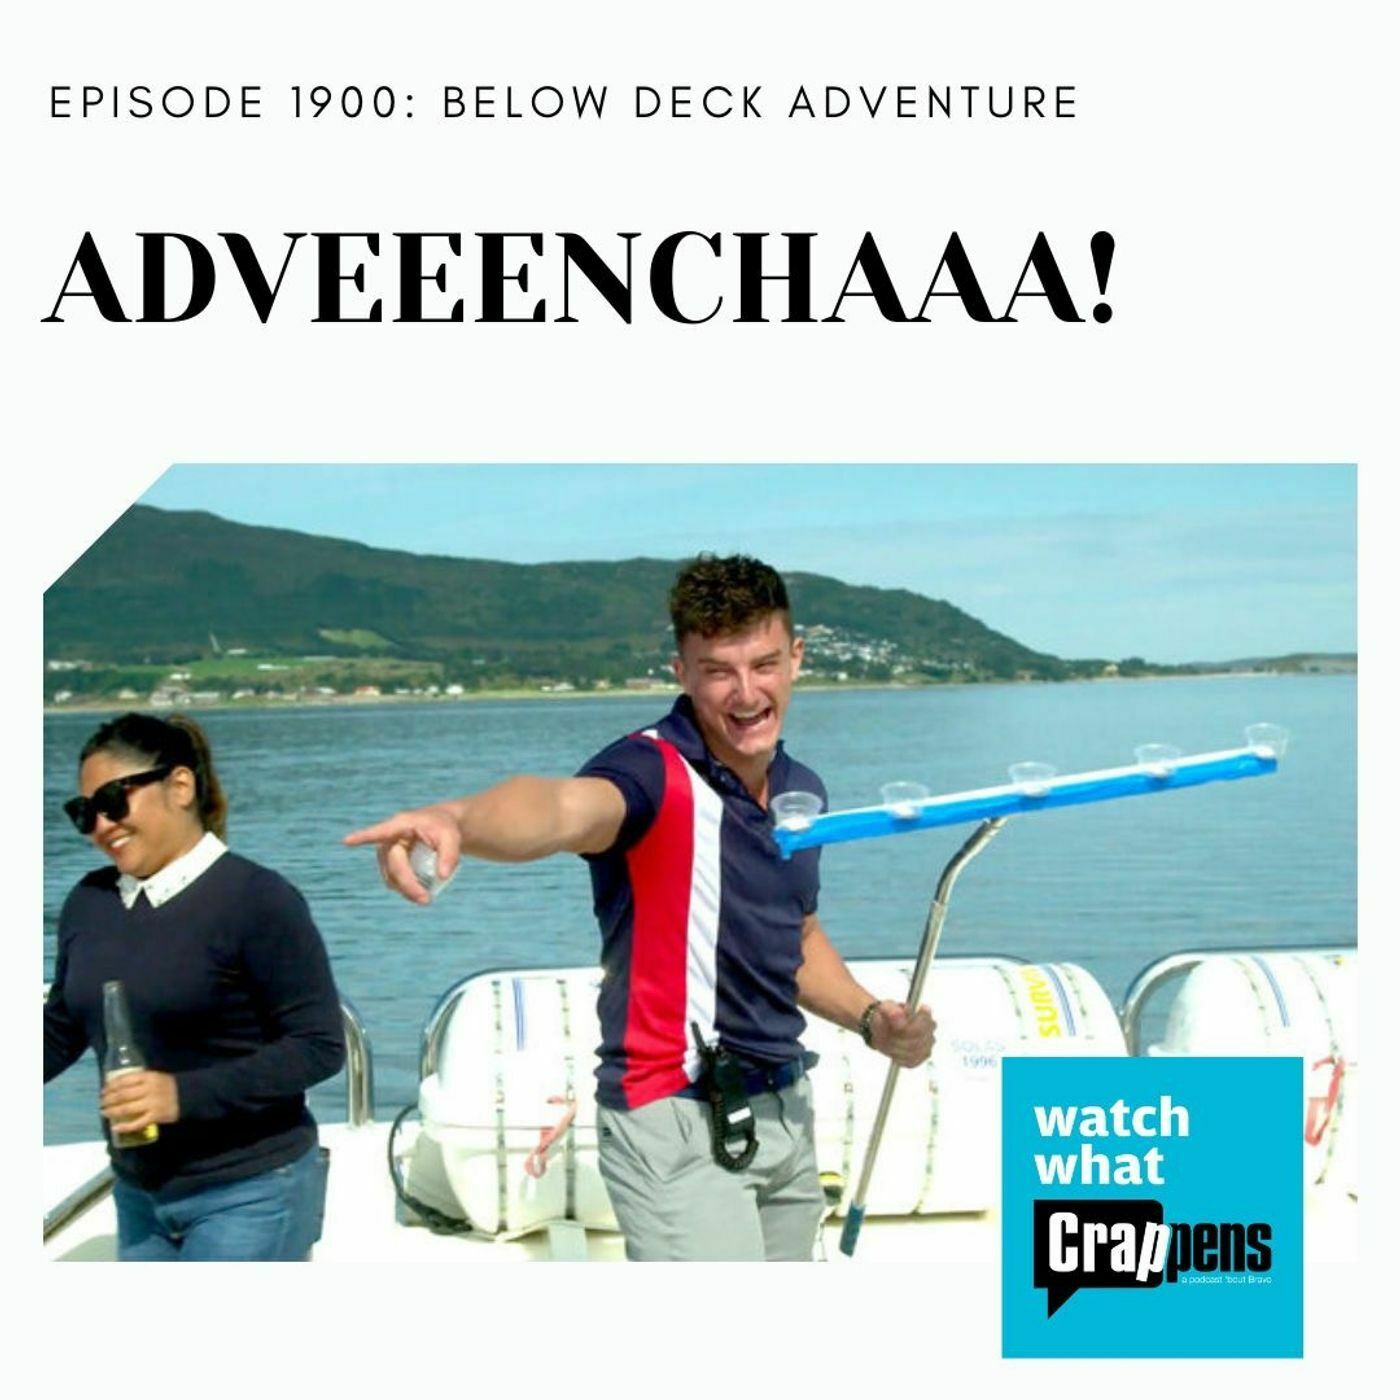 Below Deck Adventure: ADVEEENCHAAA!